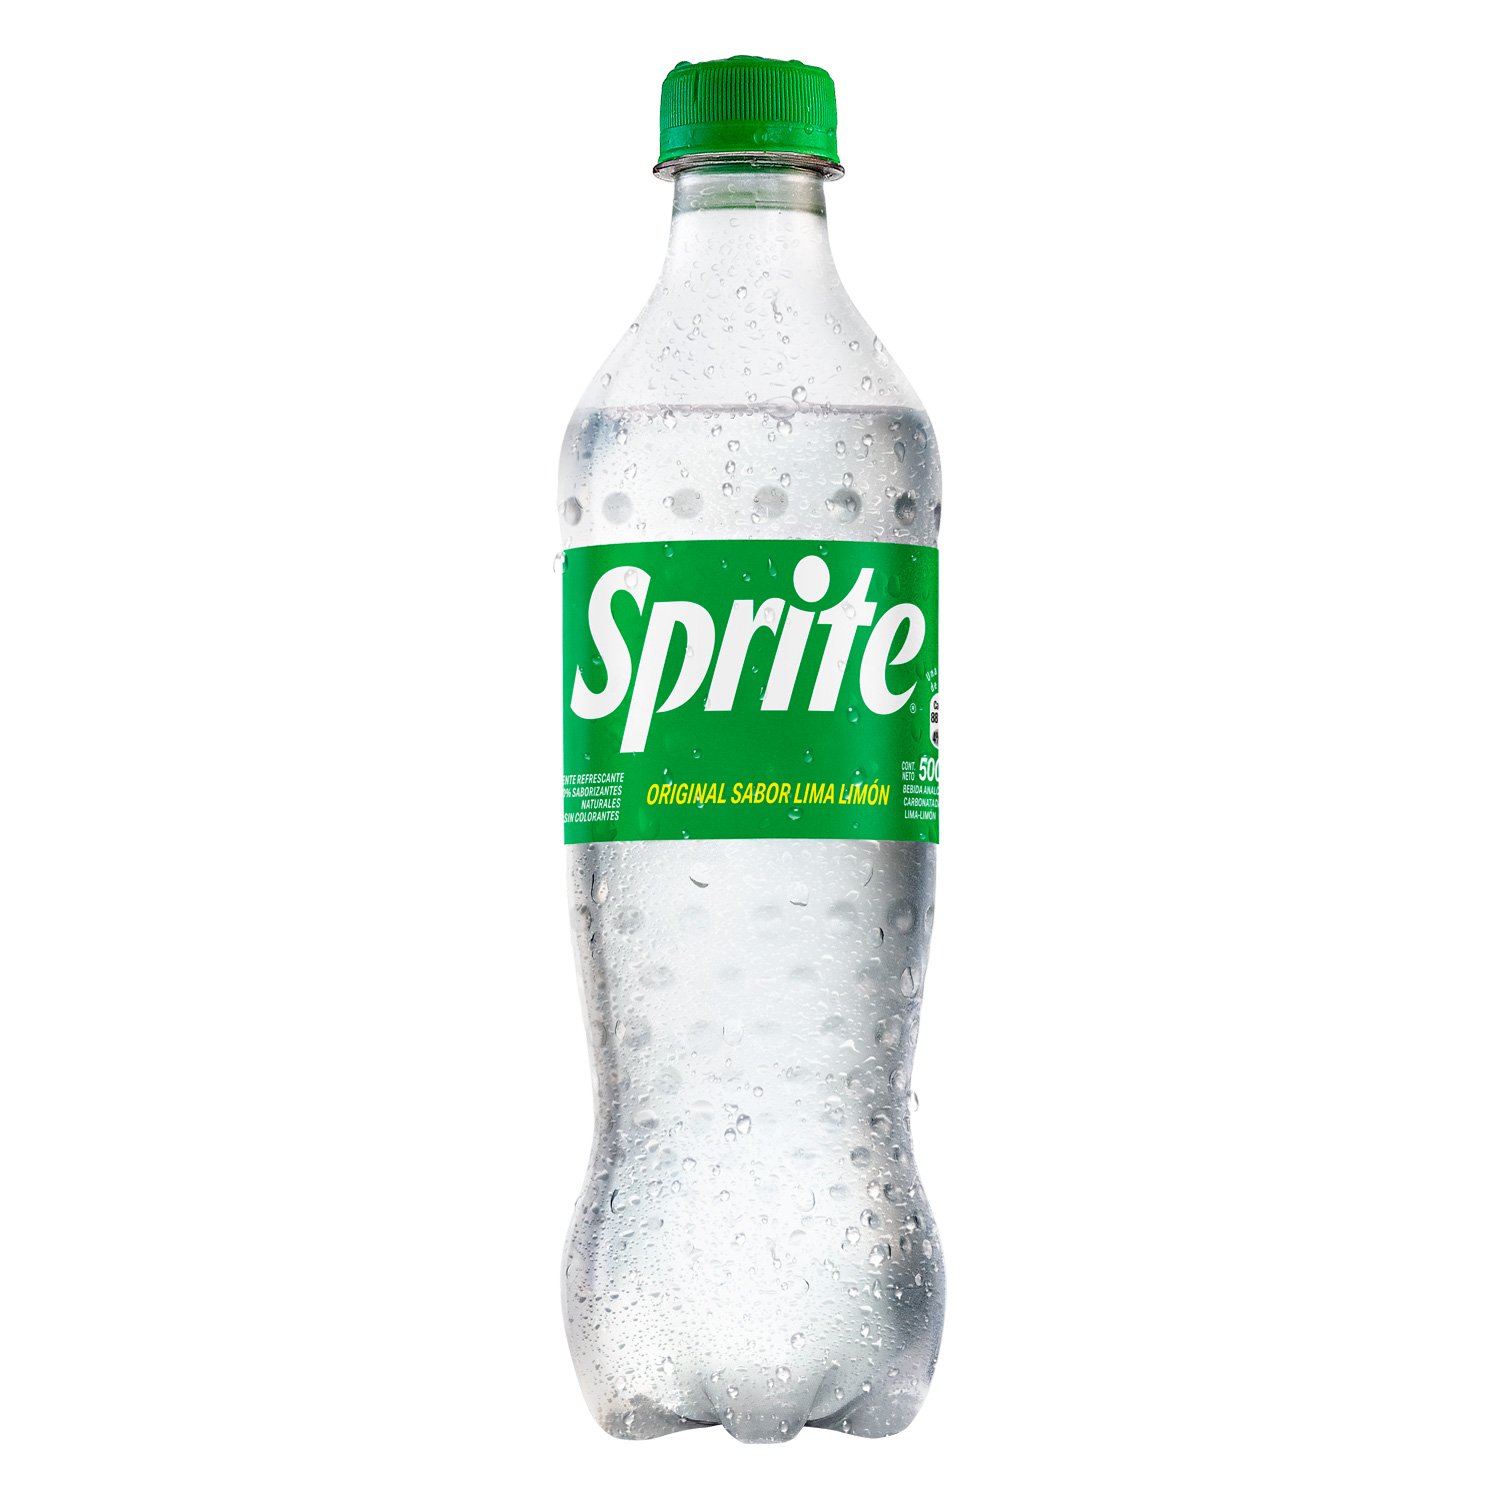 Botella de Sprite Lima Limón